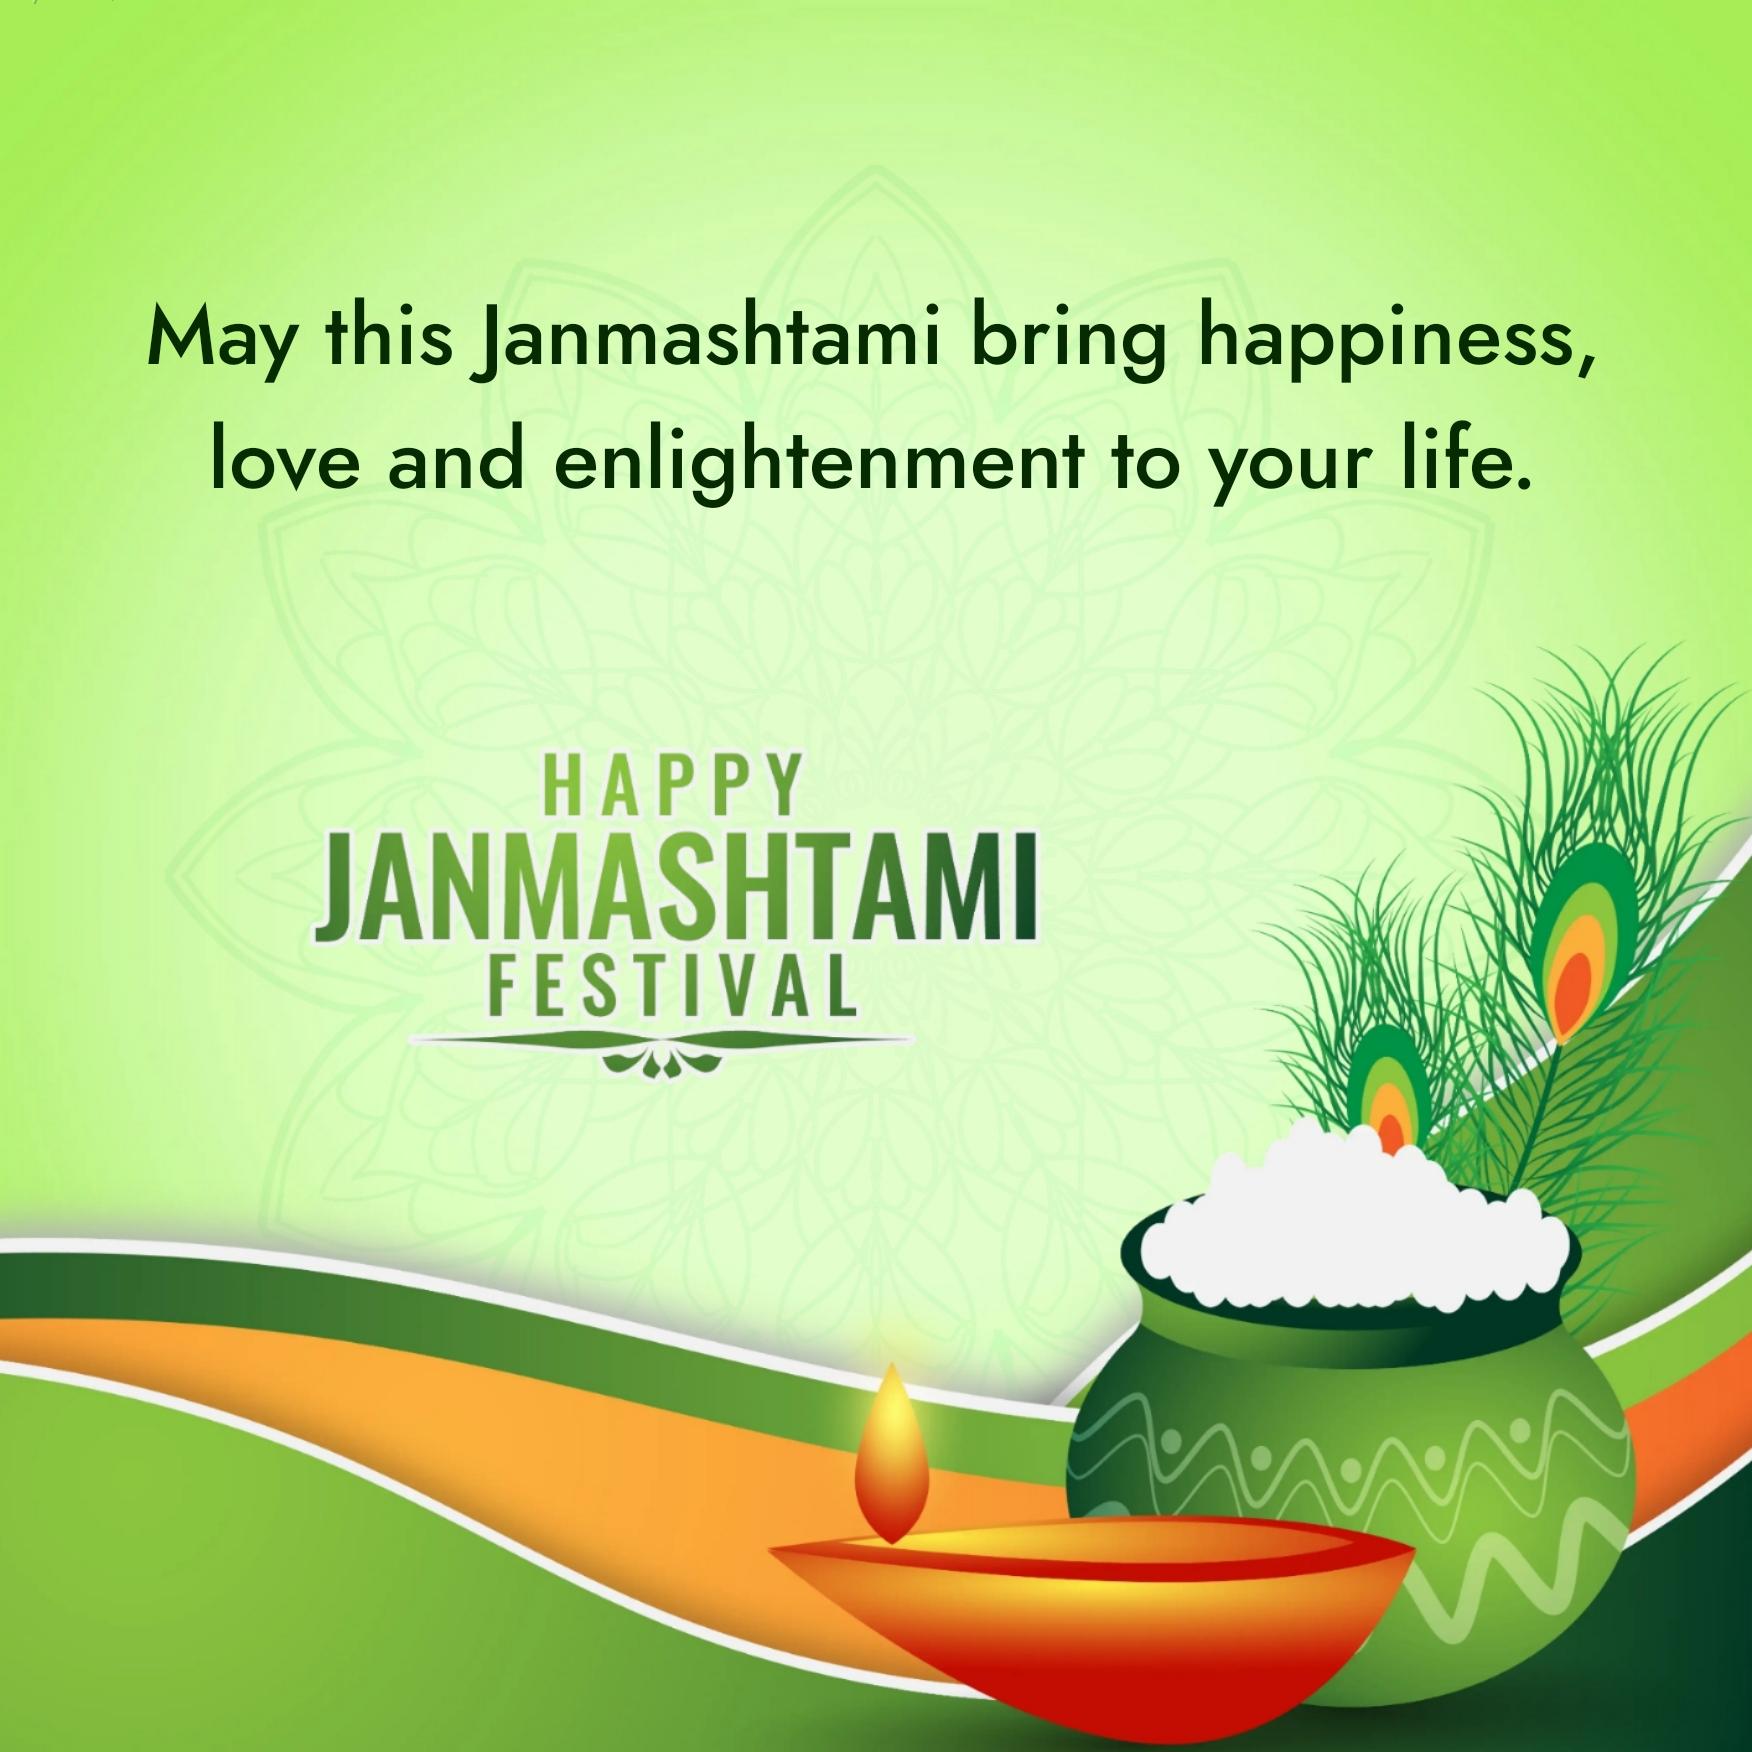 May this Janmashtami bring happiness